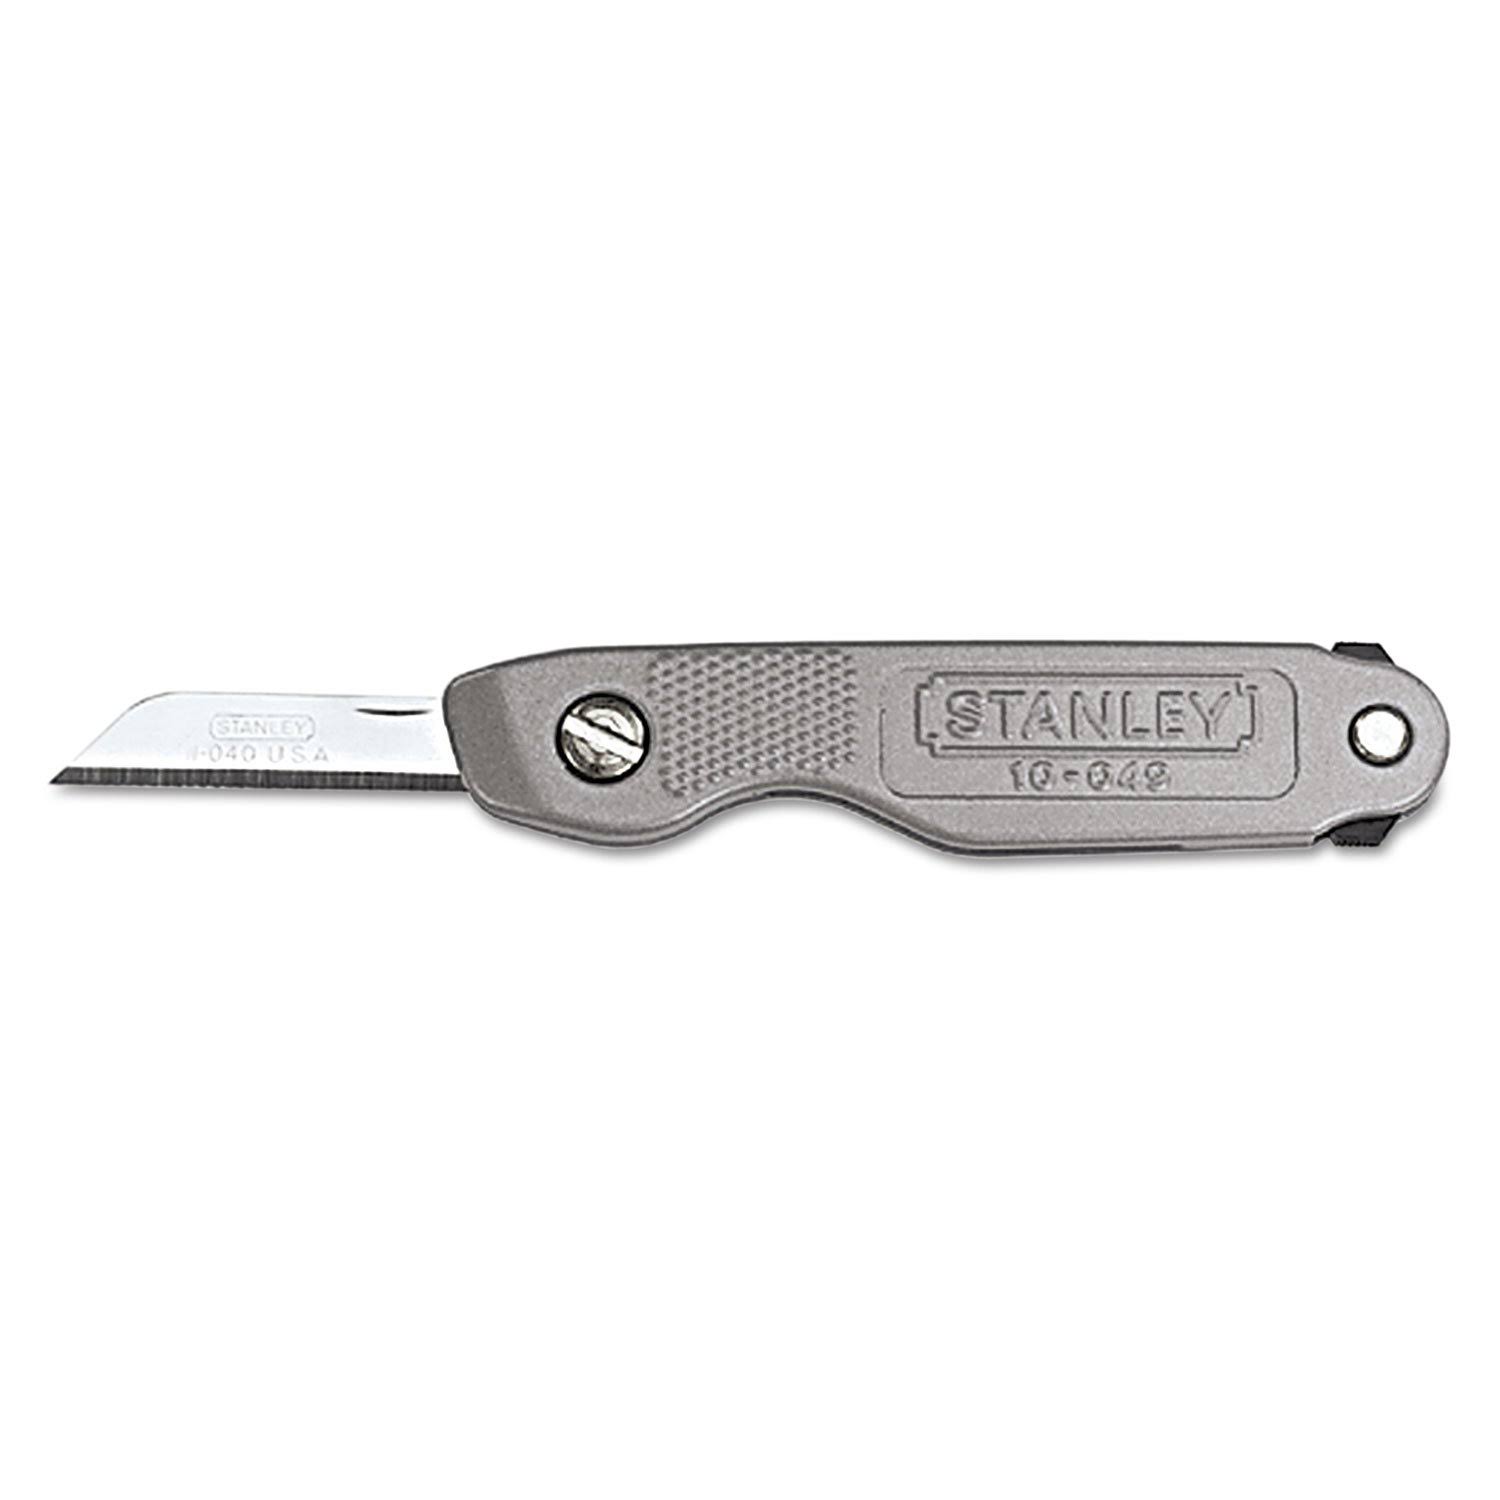 Stanley Rotating Blade Pocket Knife - 4 1/4"